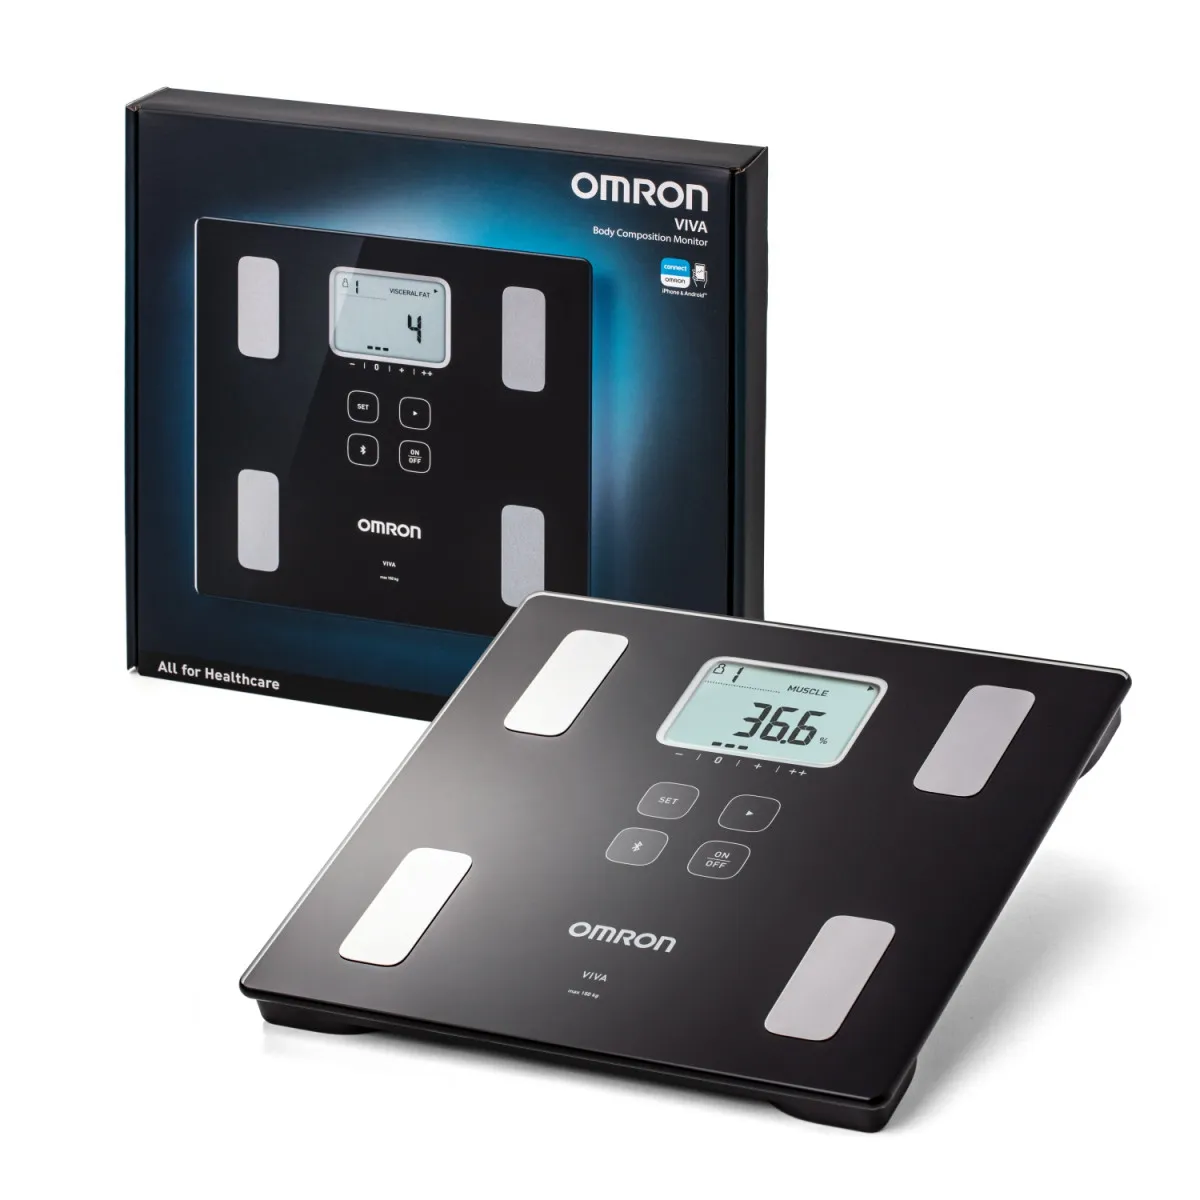 Умные весы Omron VIVA 6 показателей тела, Bluetooth подключение к приложению OMRON, черный#1